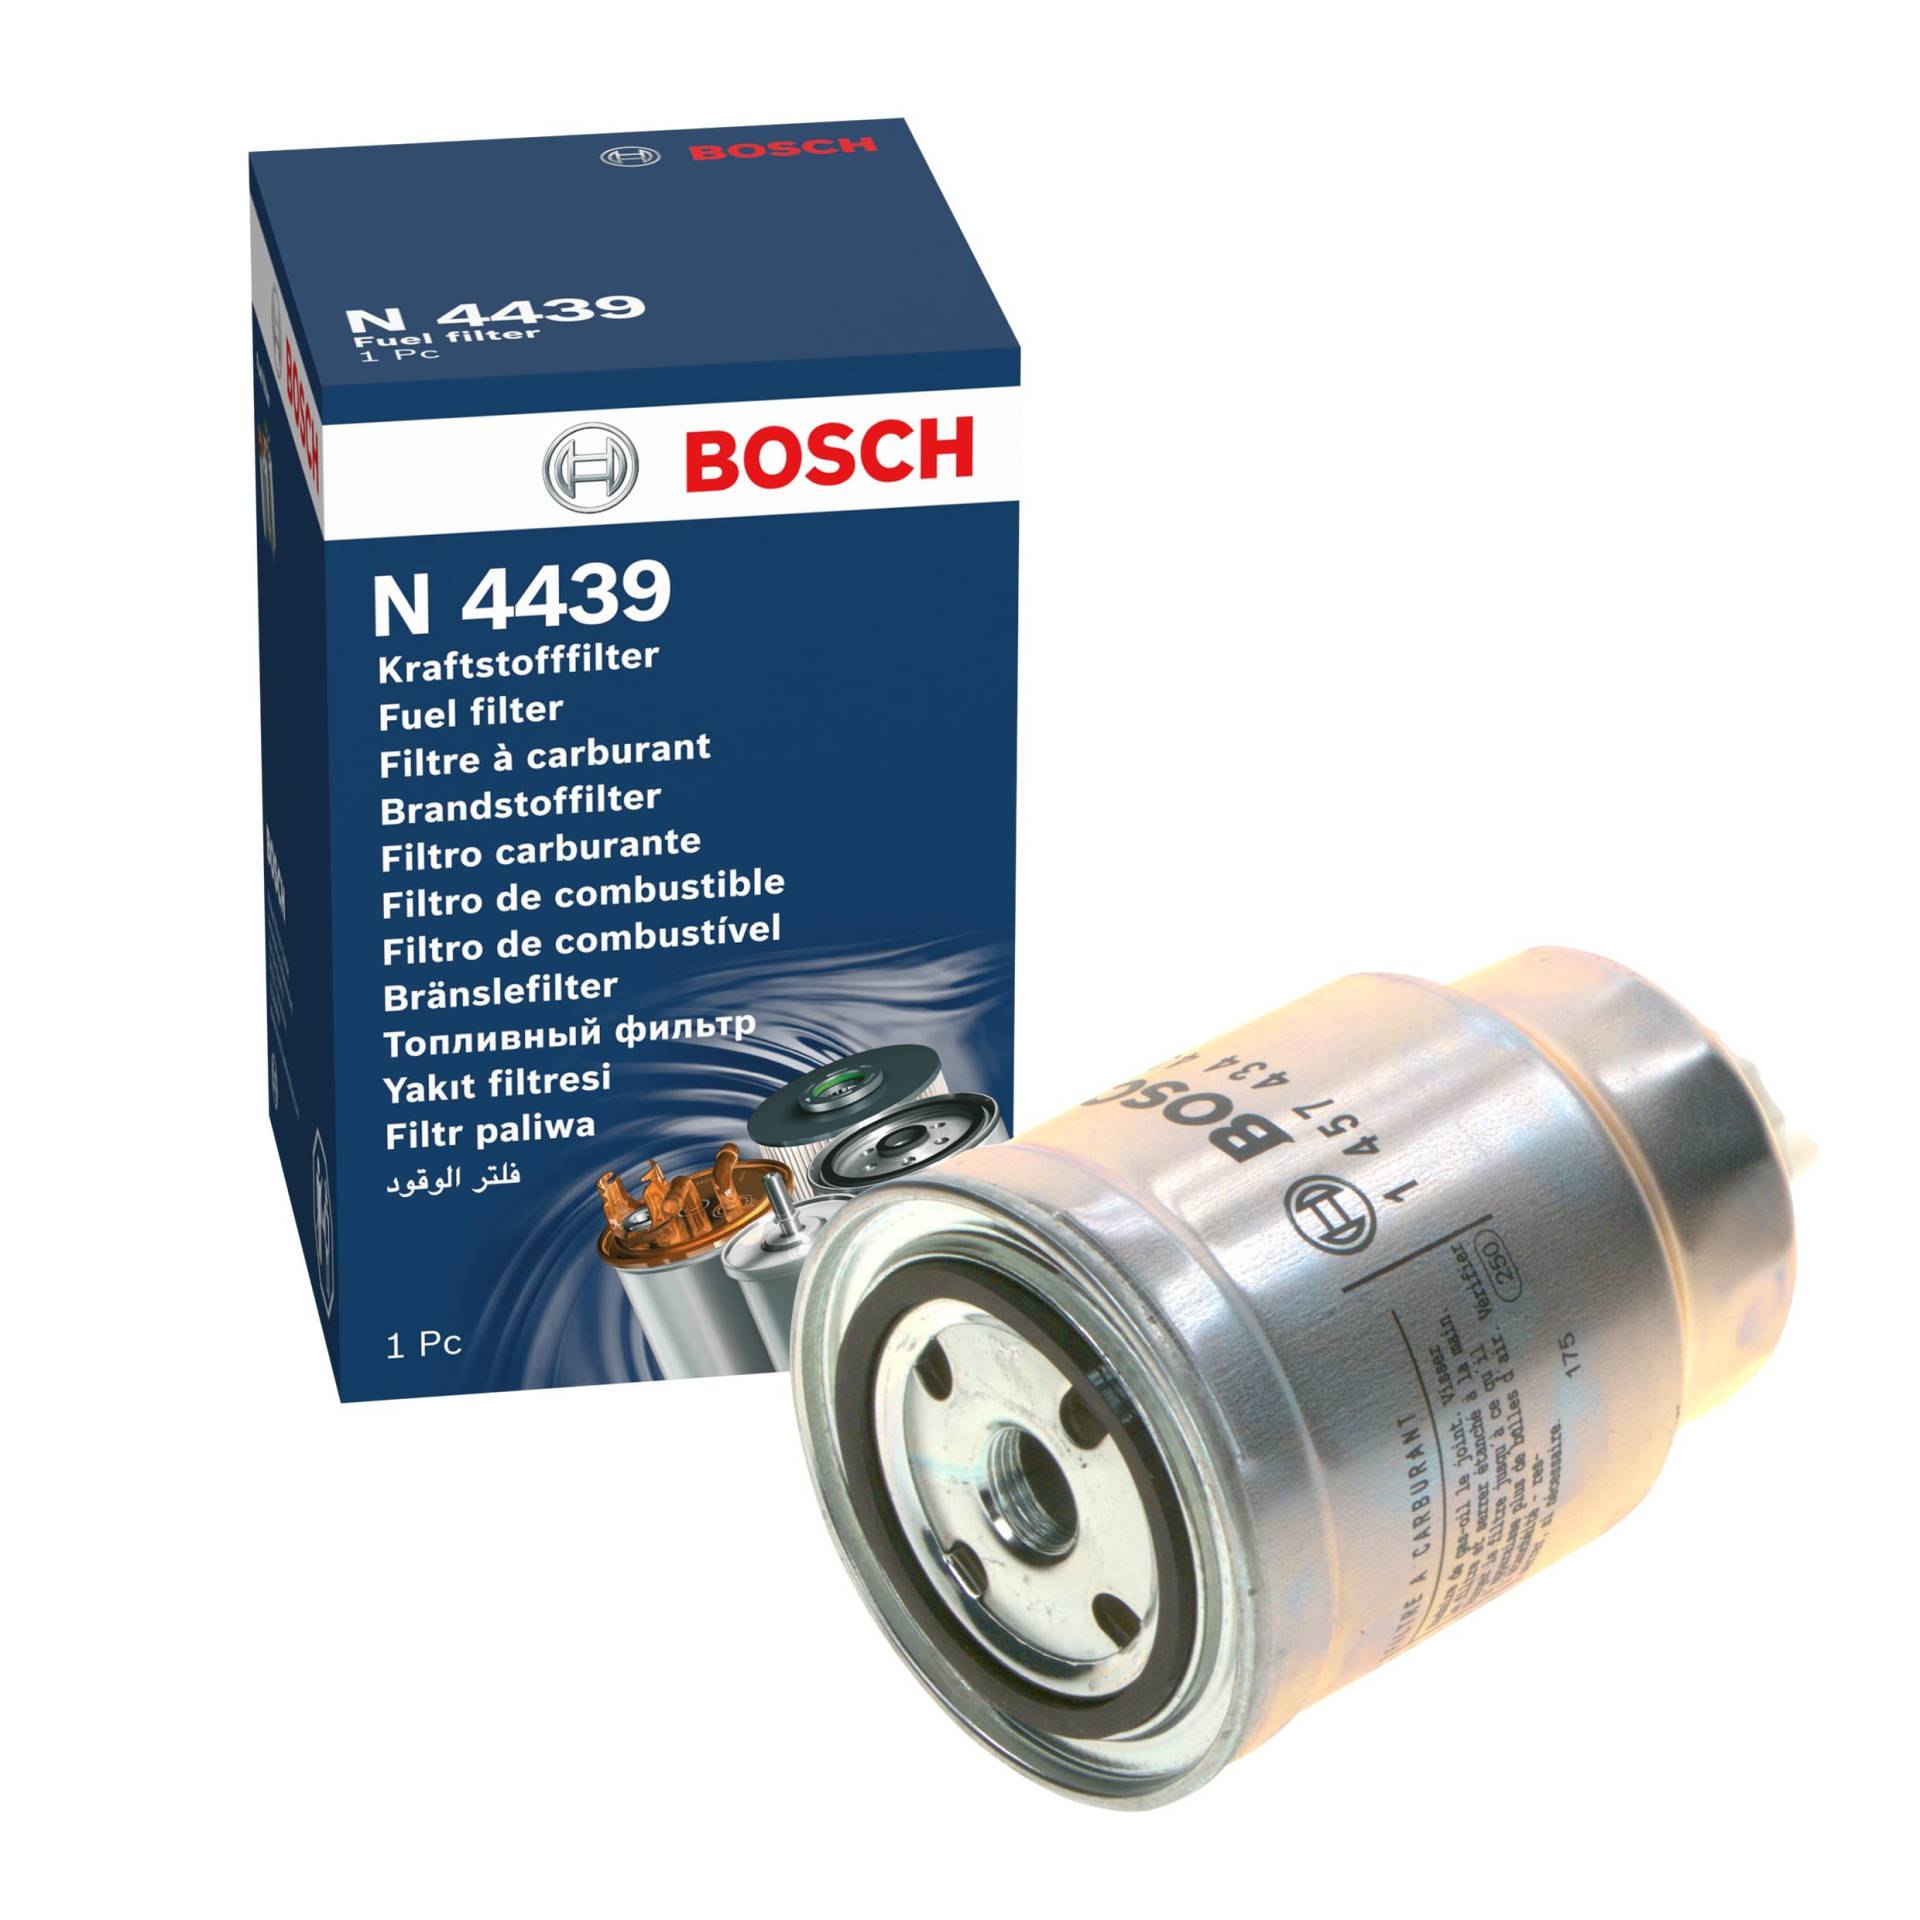 Bosch N4439 - Dieselfilter Auto von Bosch Automotive